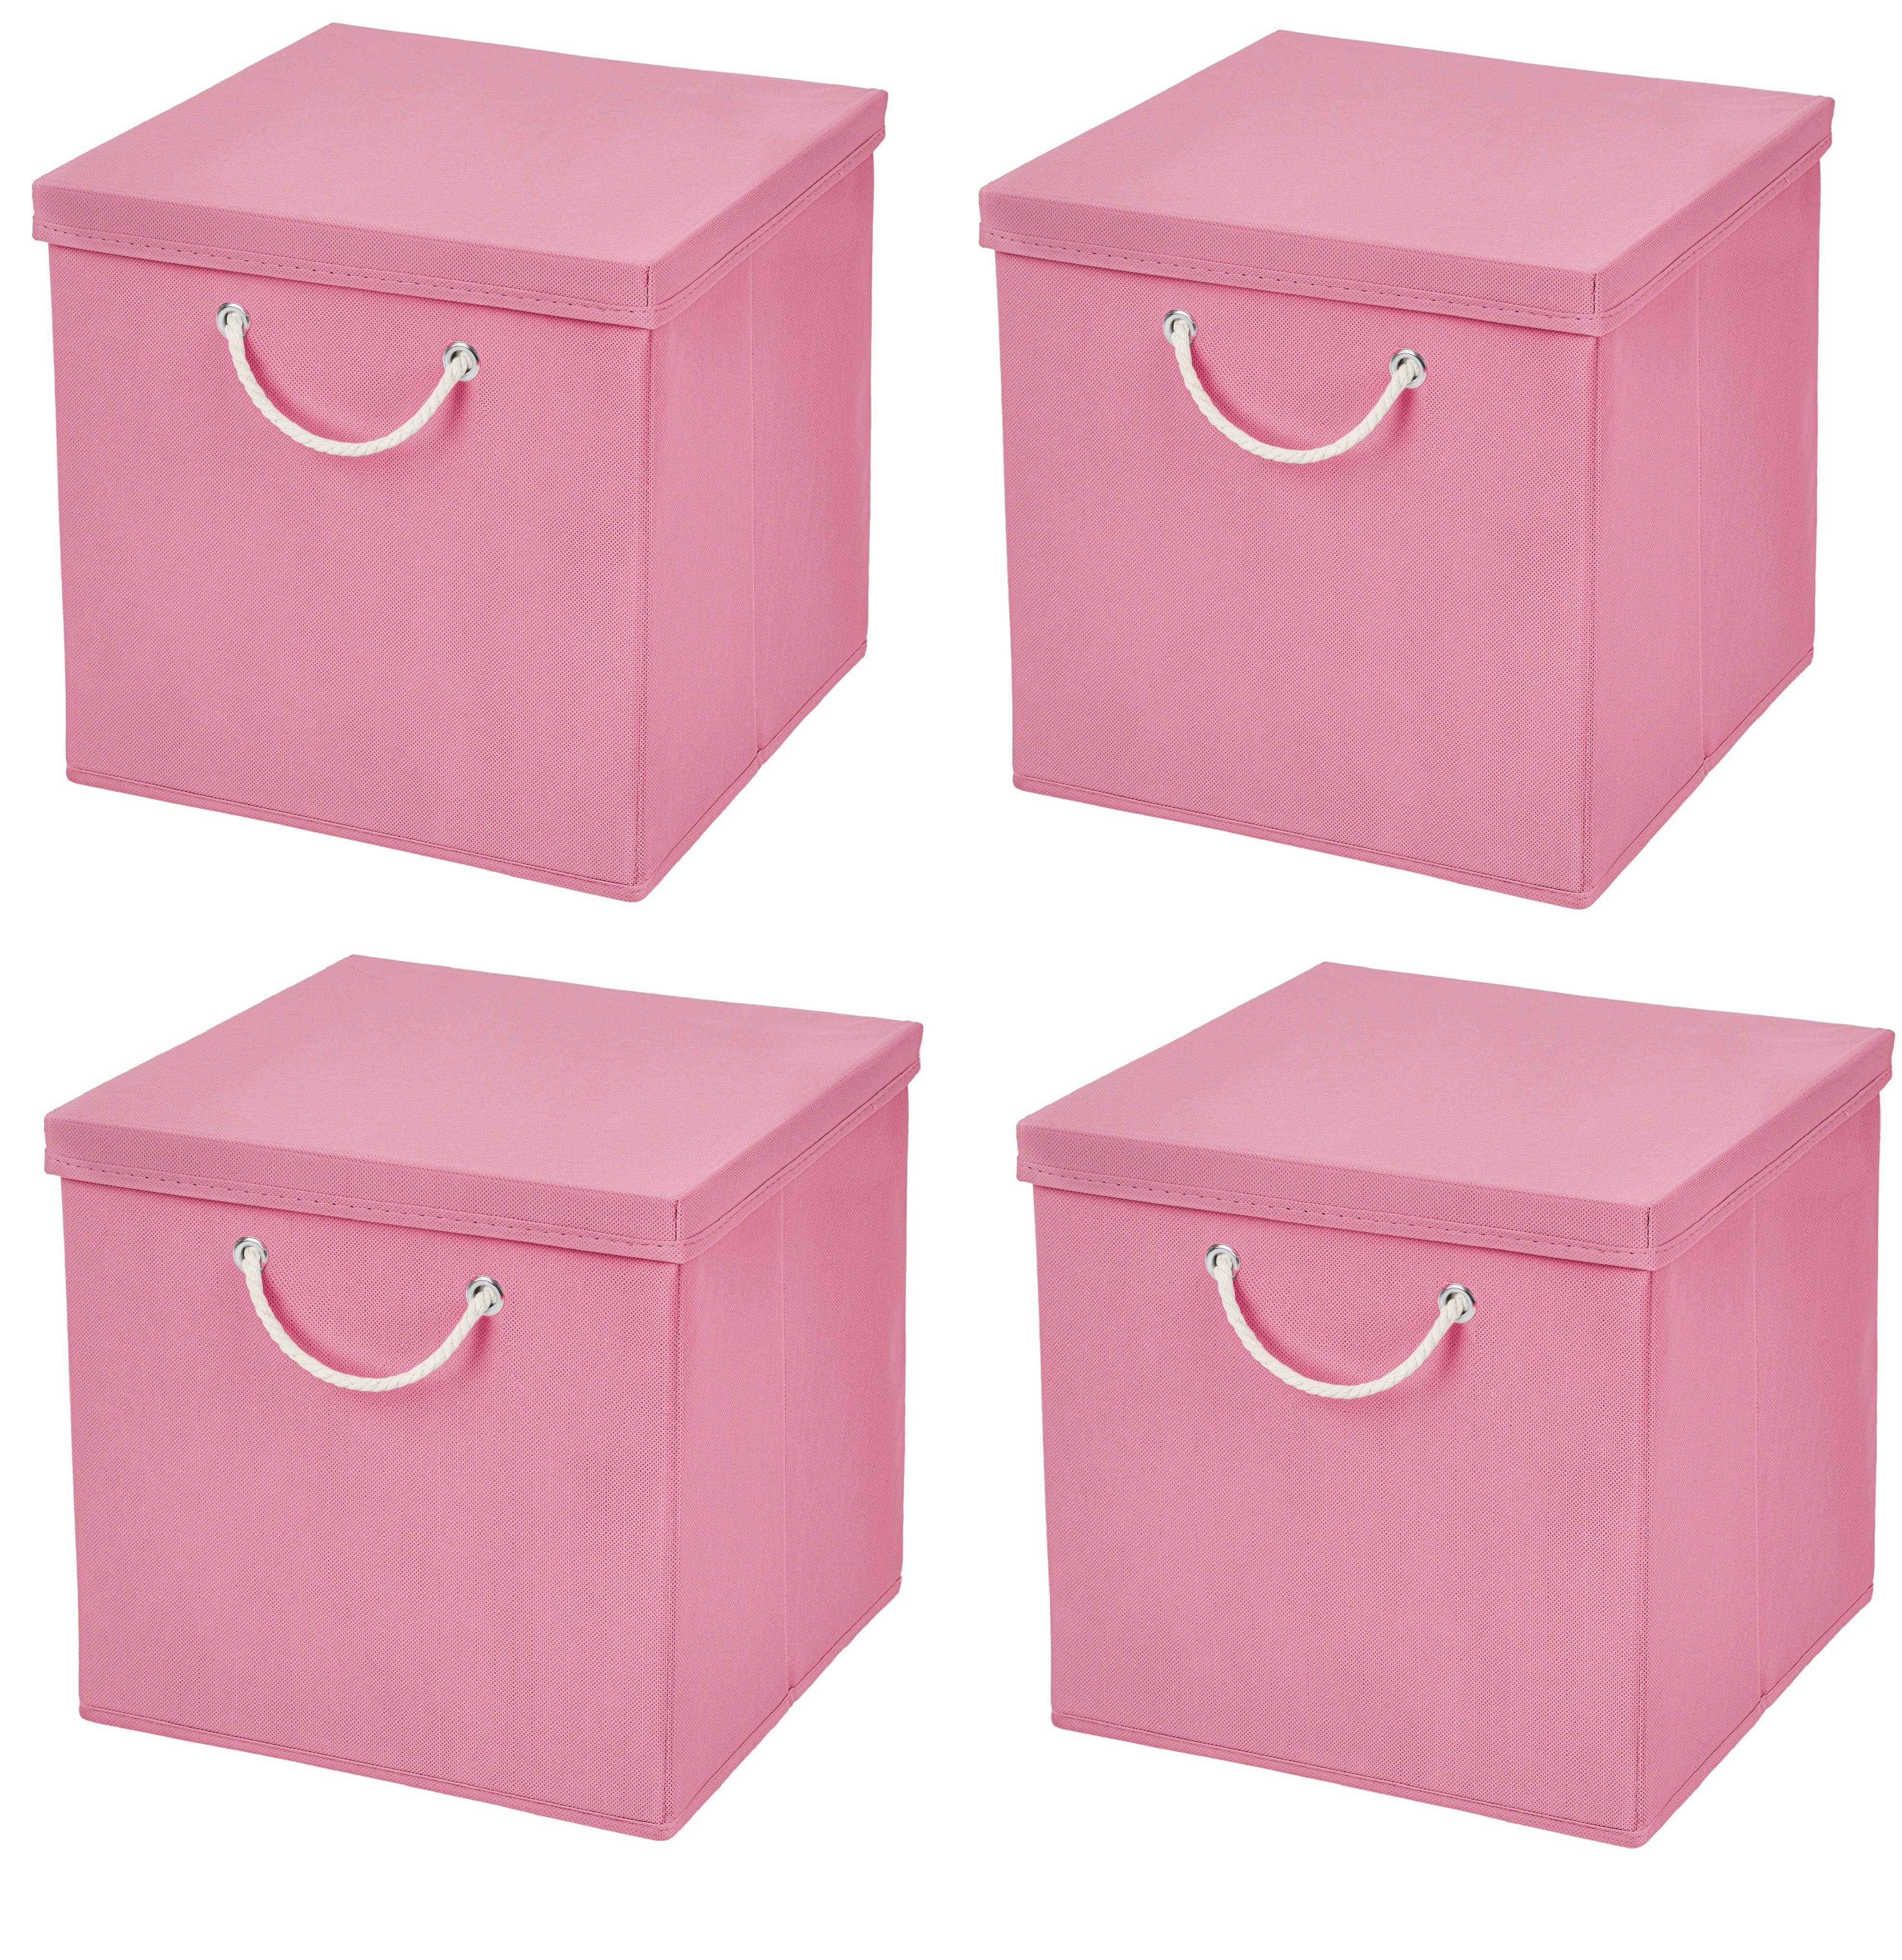 StickandShine Faltbox 4 Stück 30 x 30 x 30 cm Aufbewahrungsbox Stoffboxen in verschiedenen Farben (4er SET 30x30x30) Faltbox moderne Faltkiste Maritim mit Kordel 30cm Rosa